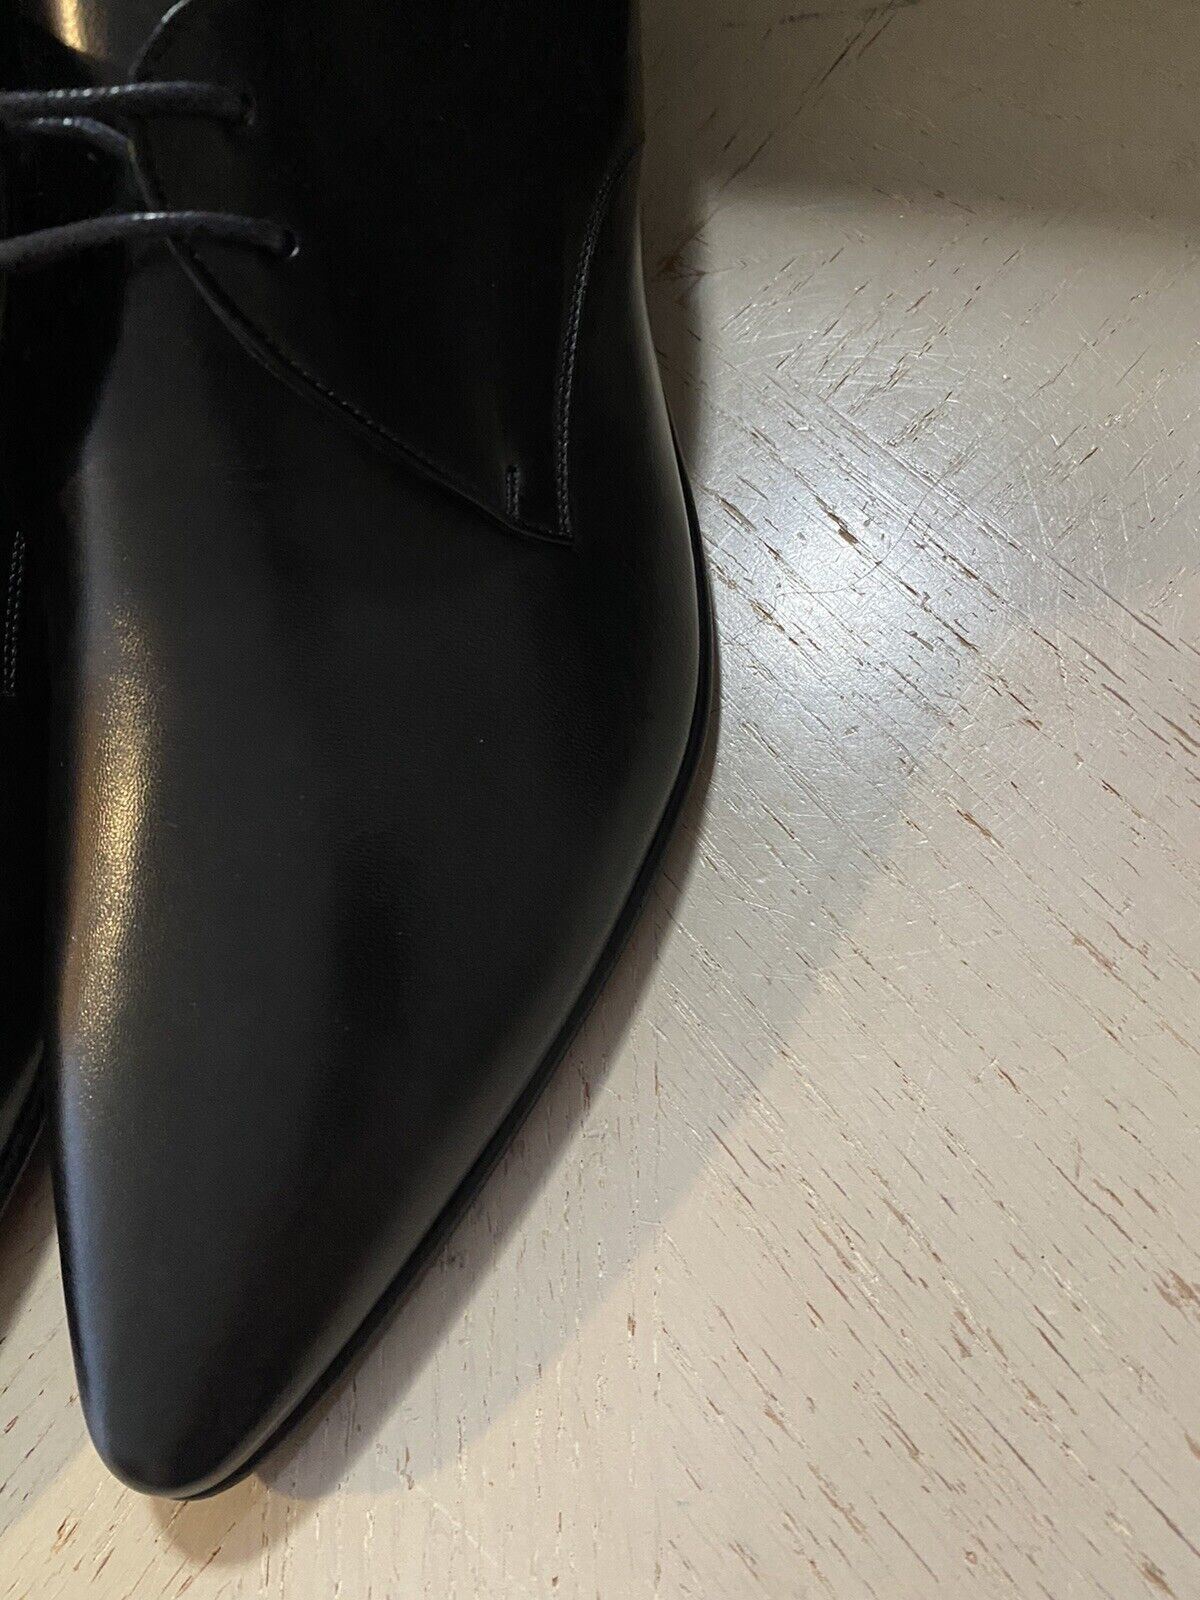 NIB $795 Мужские кожаные классические туфли Saint Laurent черные 10 США/43 ЕС Италия